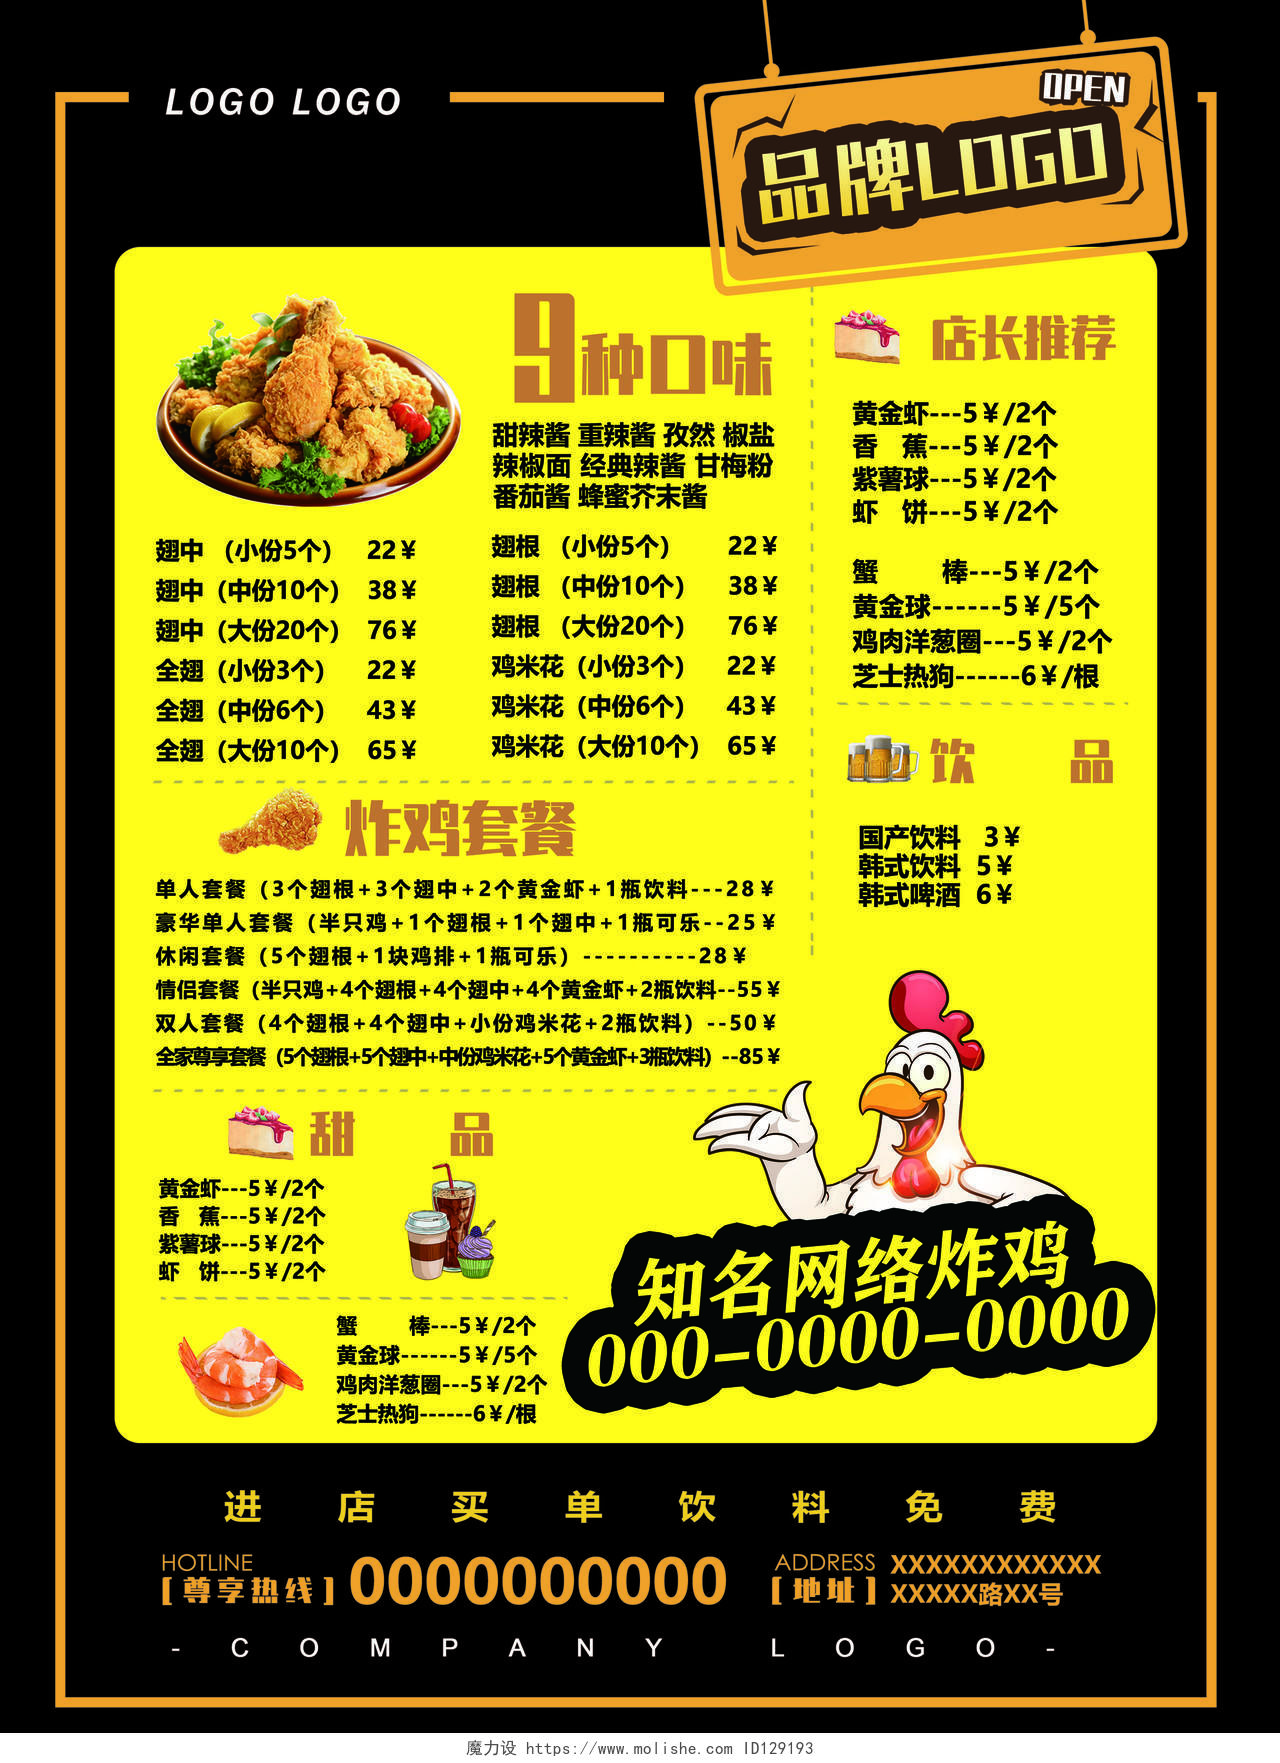 红色炸鸡新店开业全场优惠活动宣传菜单美食快餐炸鸡